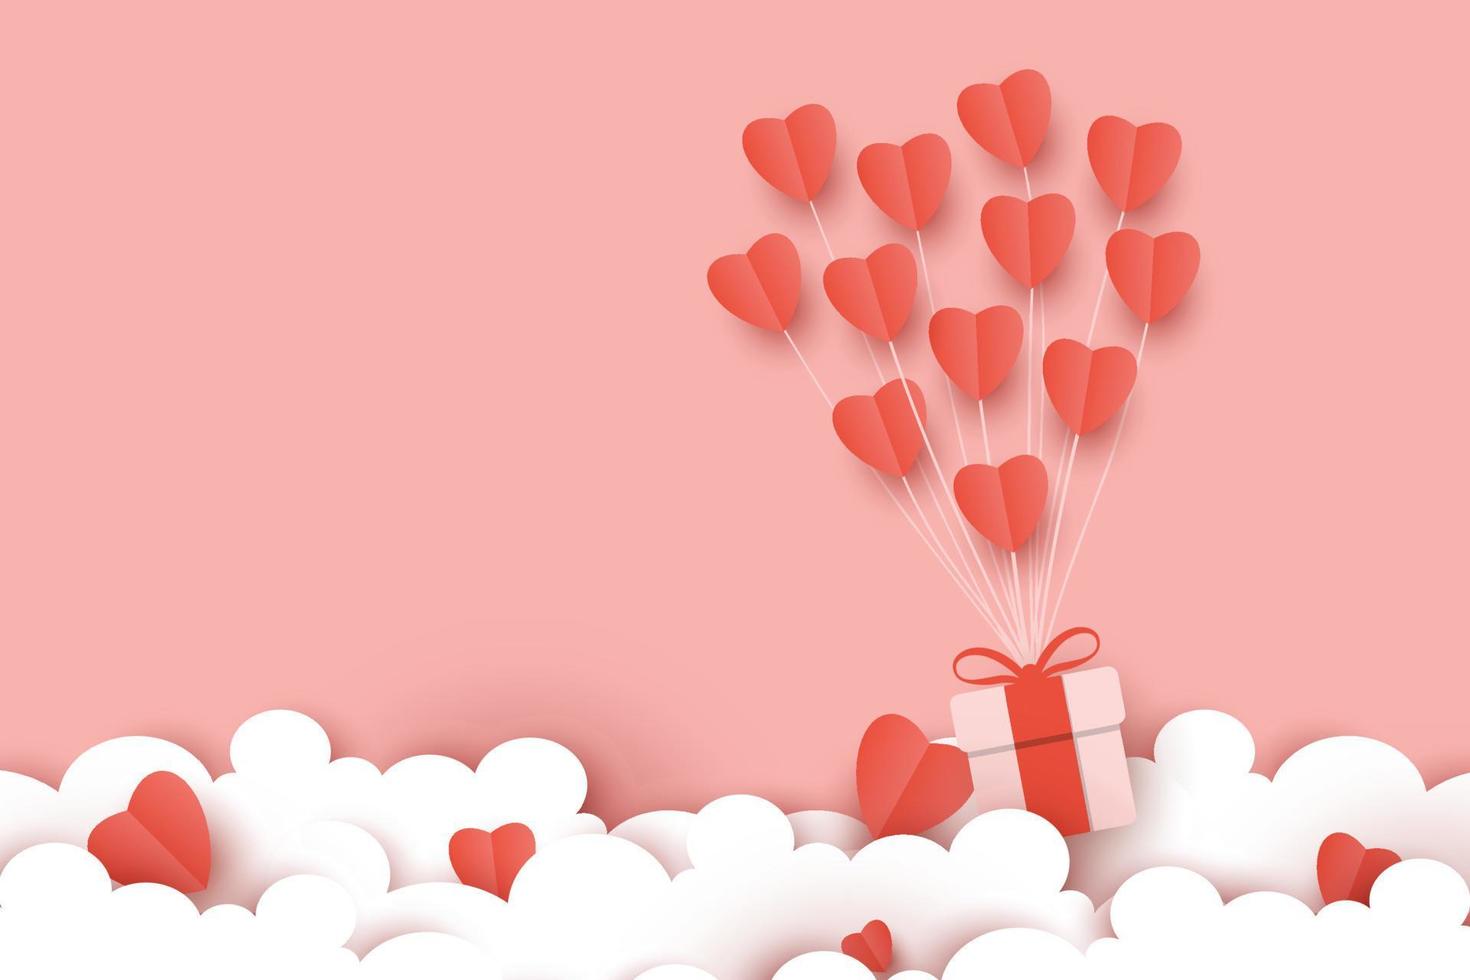 modèle de vecteur de fond joyeux saint valentin, joli papier peint de style papier découpé avec une couleur rose tendre et un élément d'amour volant